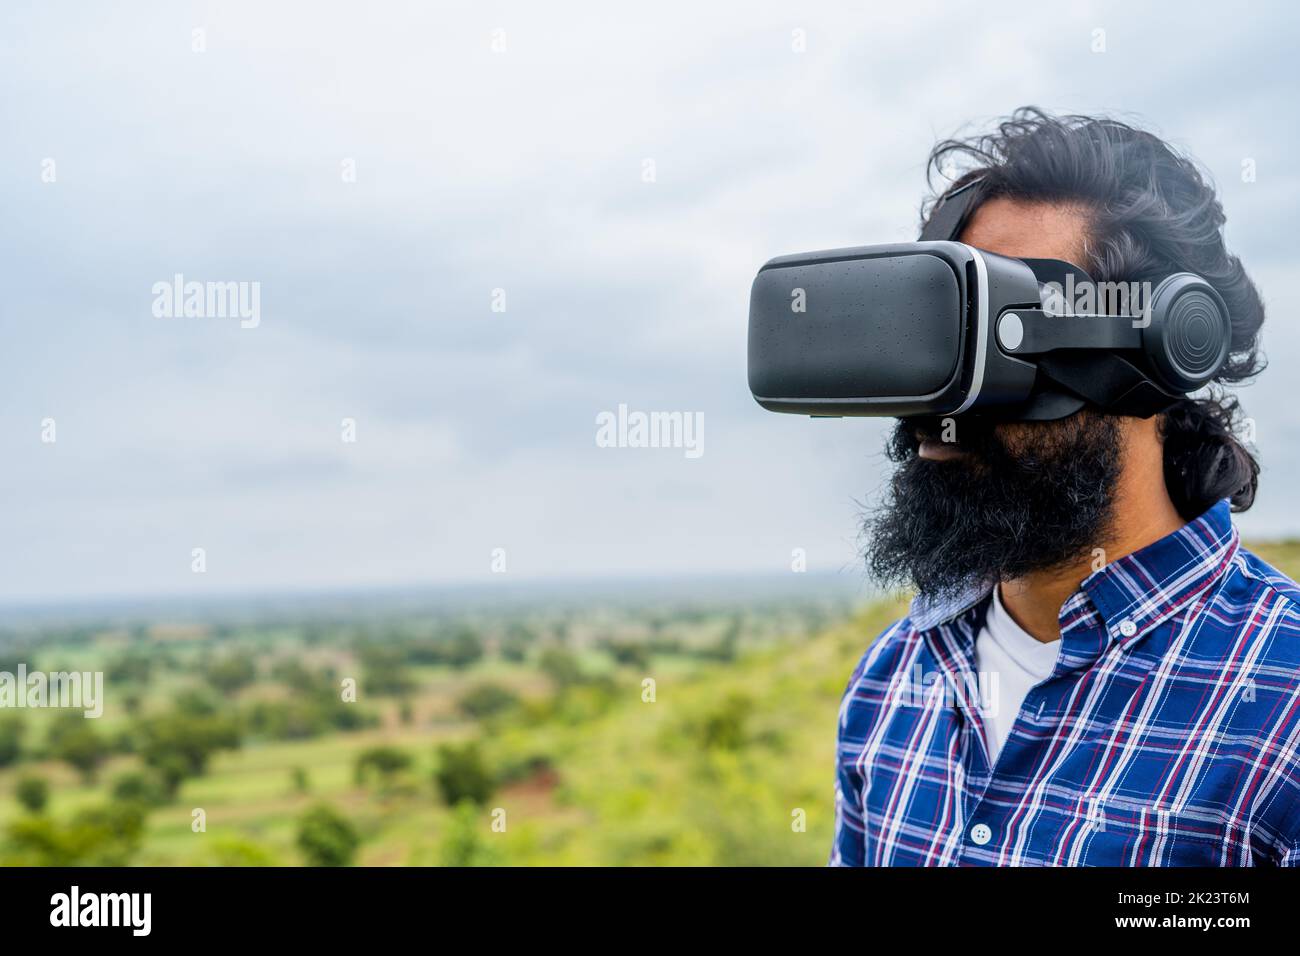 Céntrese en el VR, un hombre de barba joven que utiliza un cabezal de realidad virtual en la cima de una colina bajo la lluvia con espacio de copia: Concepto de tecnología, futuro y metaverso. Foto de stock